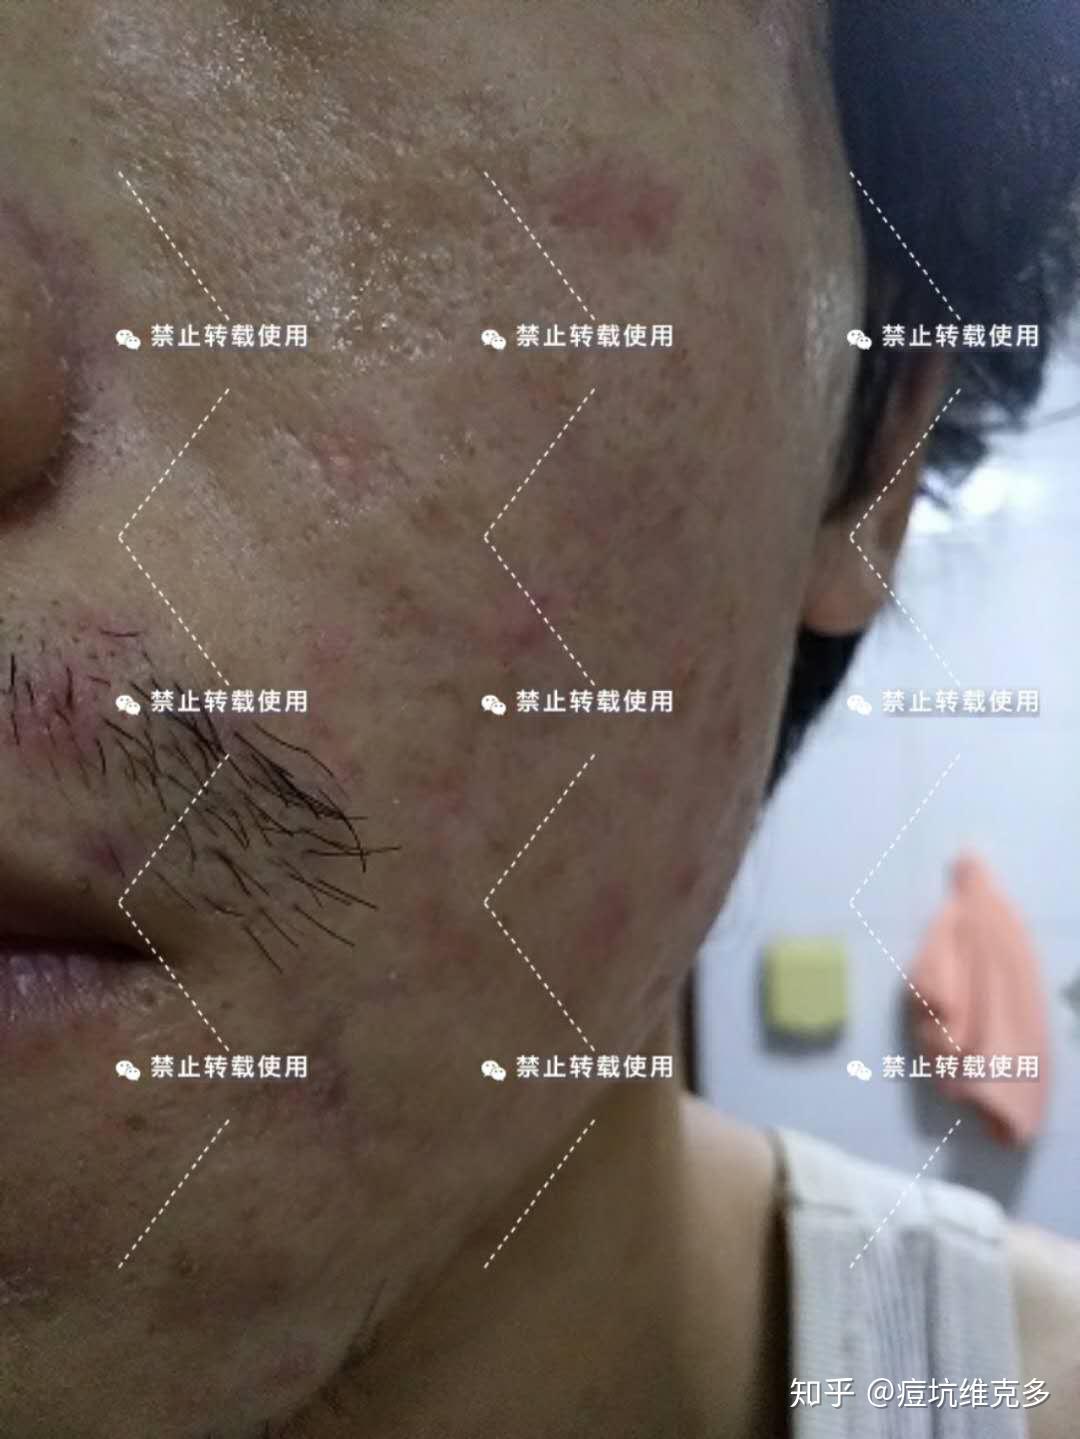 脸上的痘印痘坑怎么才能修复好？ - 知乎